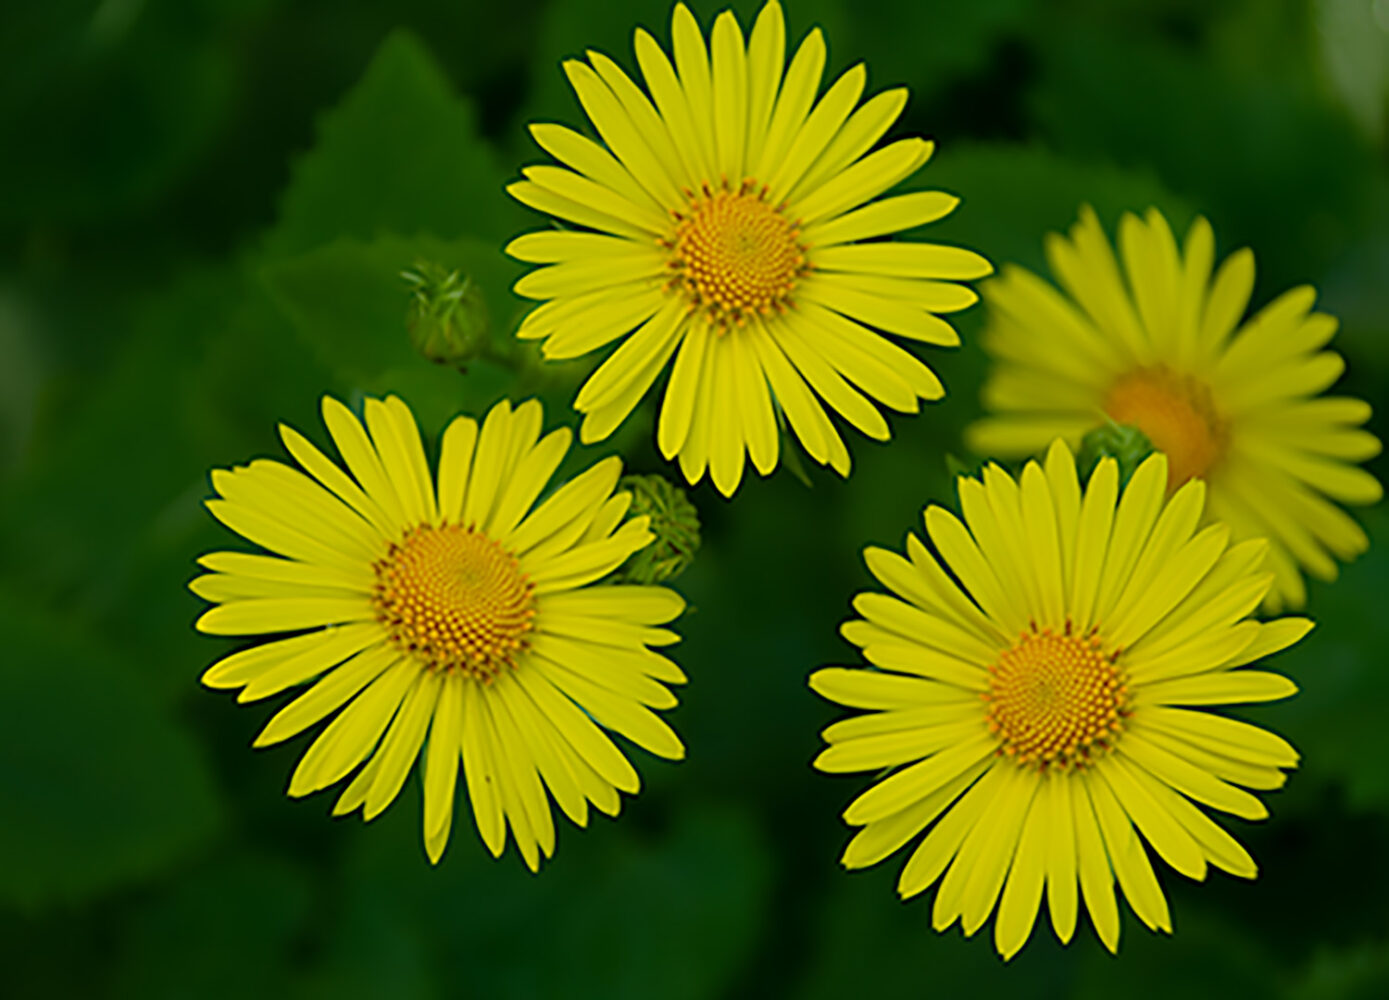 neljä keltaista, päivänkakkaraa muistuttavaa kukkaa